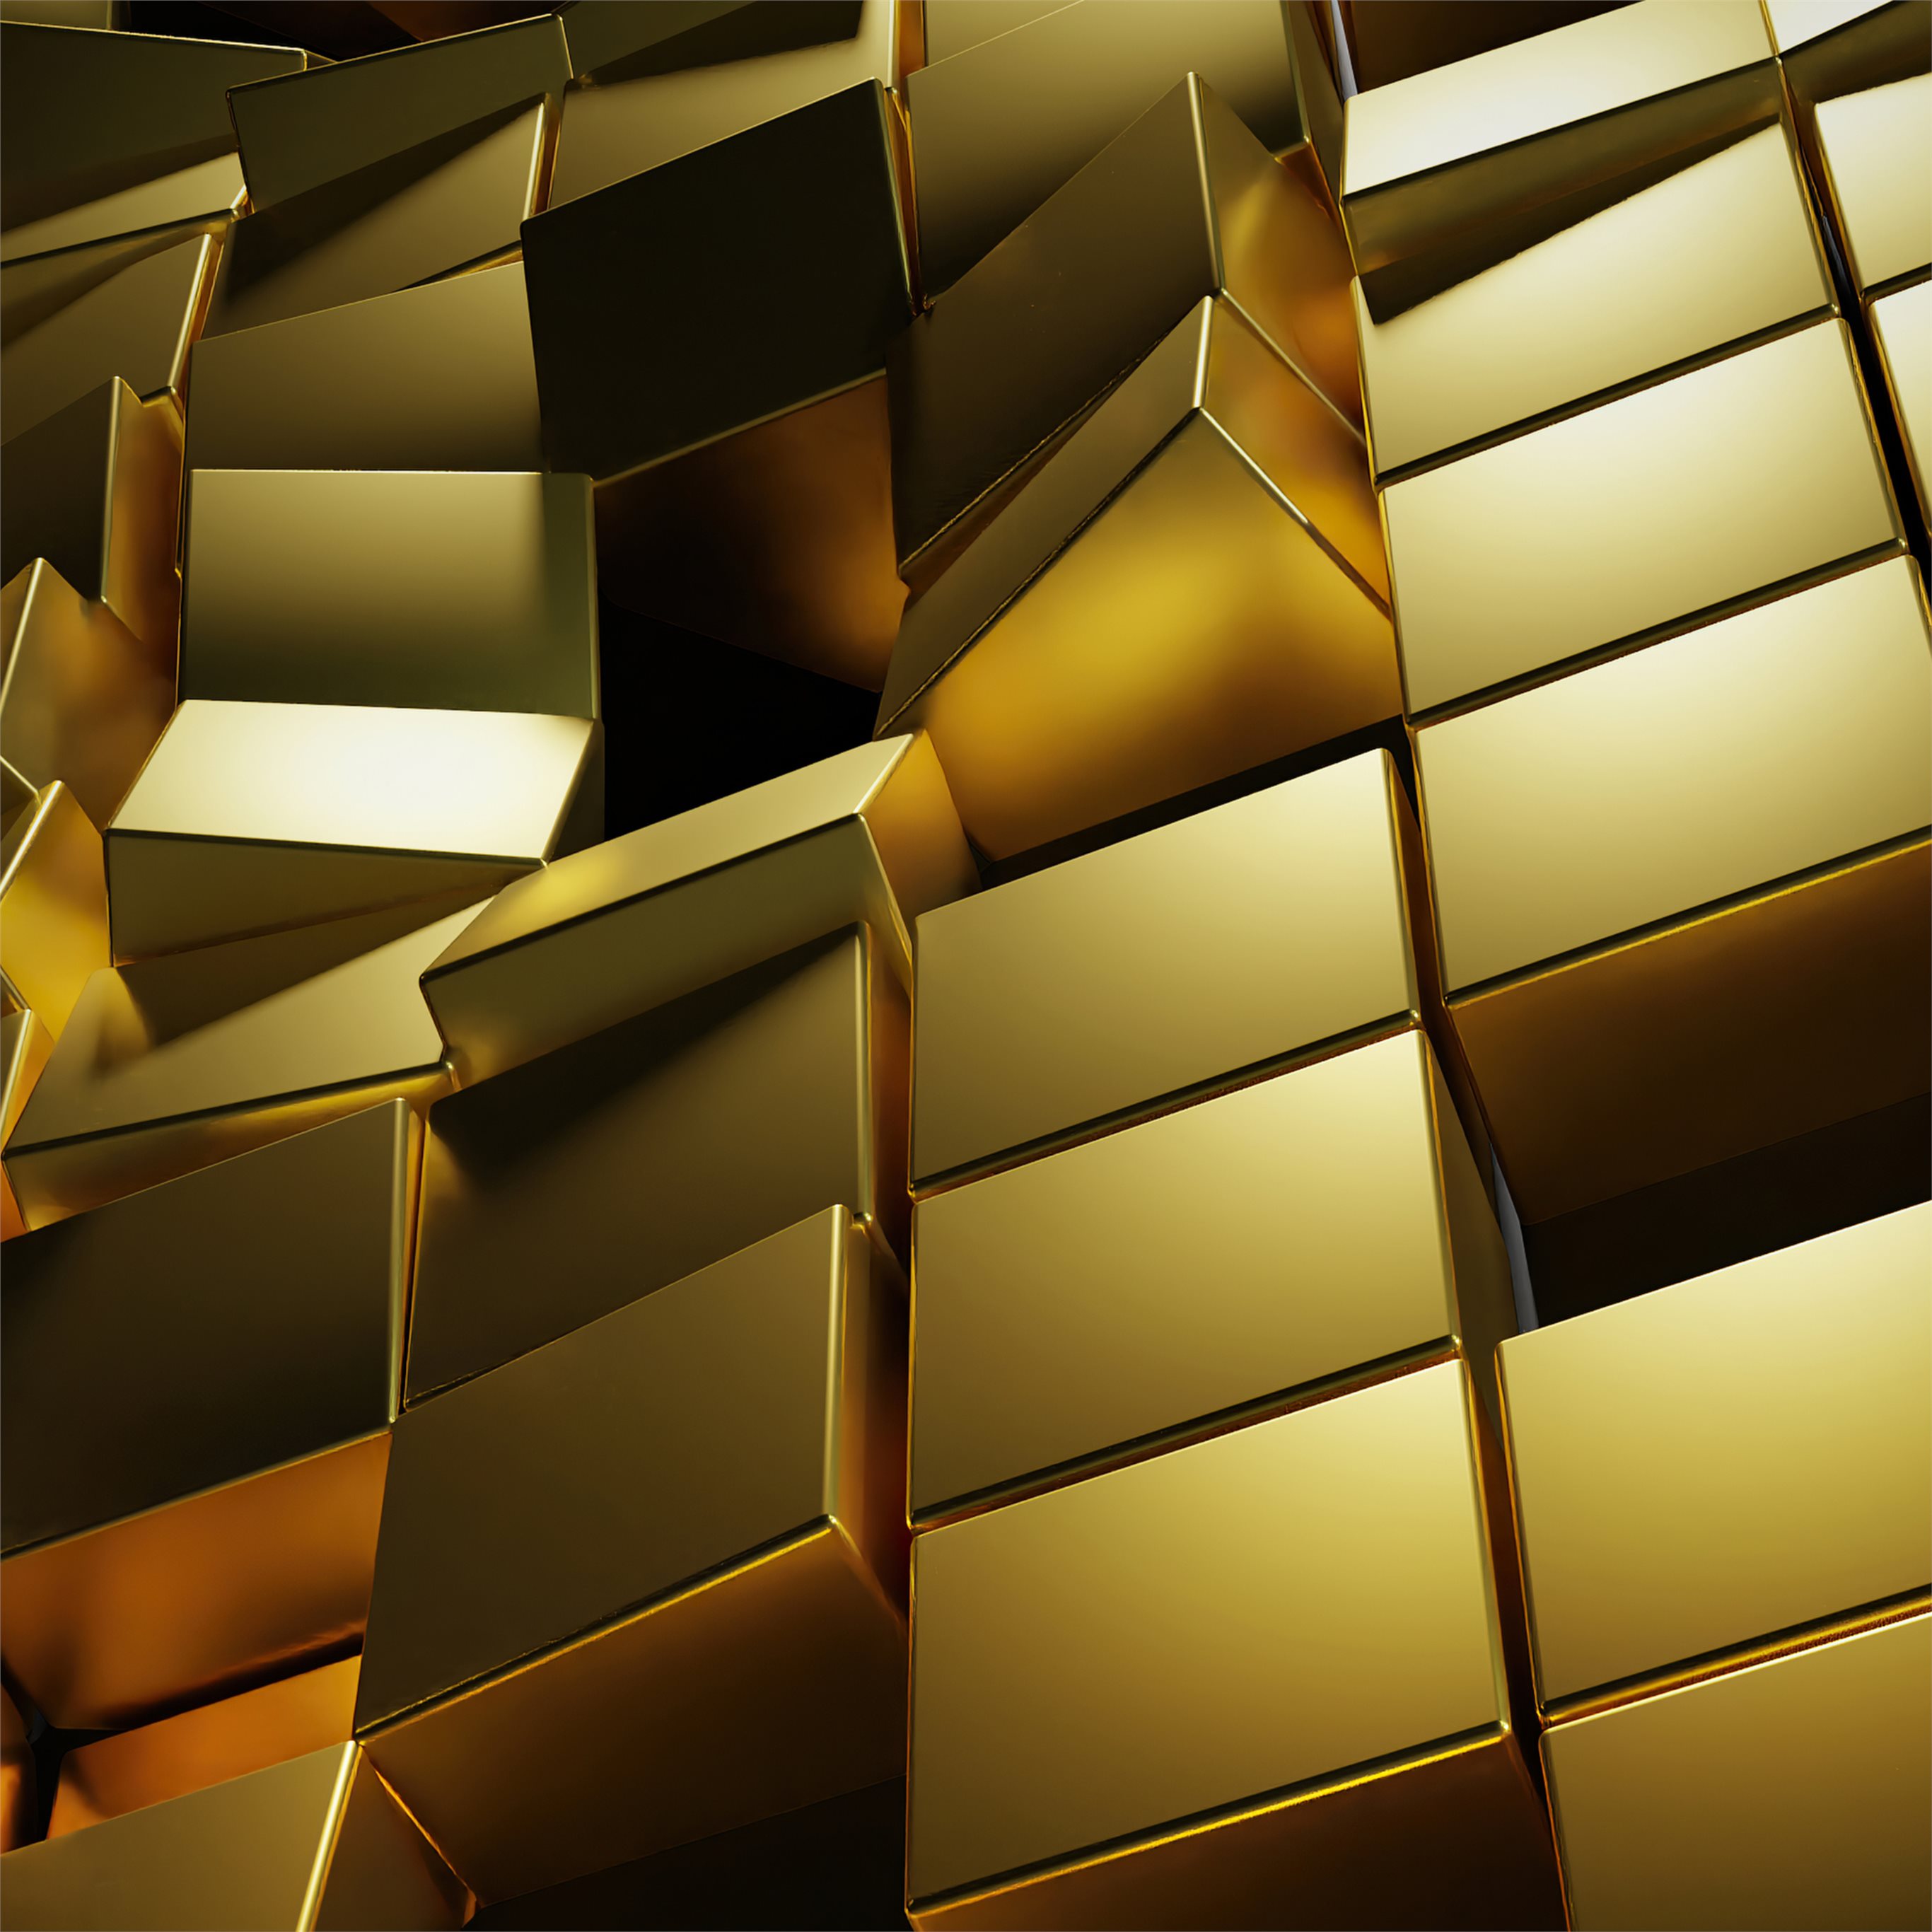 Với những hình khối 3D sắc nét, những tấm hình nền giấy dán tường Gold 3D Cubes khiến cho không gian sống của bạn trở nên thật độc đáo và thú vị. Và với chất lượng 4K đỉnh cao, bạn cảm nhận được những chi tiết tinh tế nhất của từng block hình, khiến bạn sẽ không thể rời mắt.